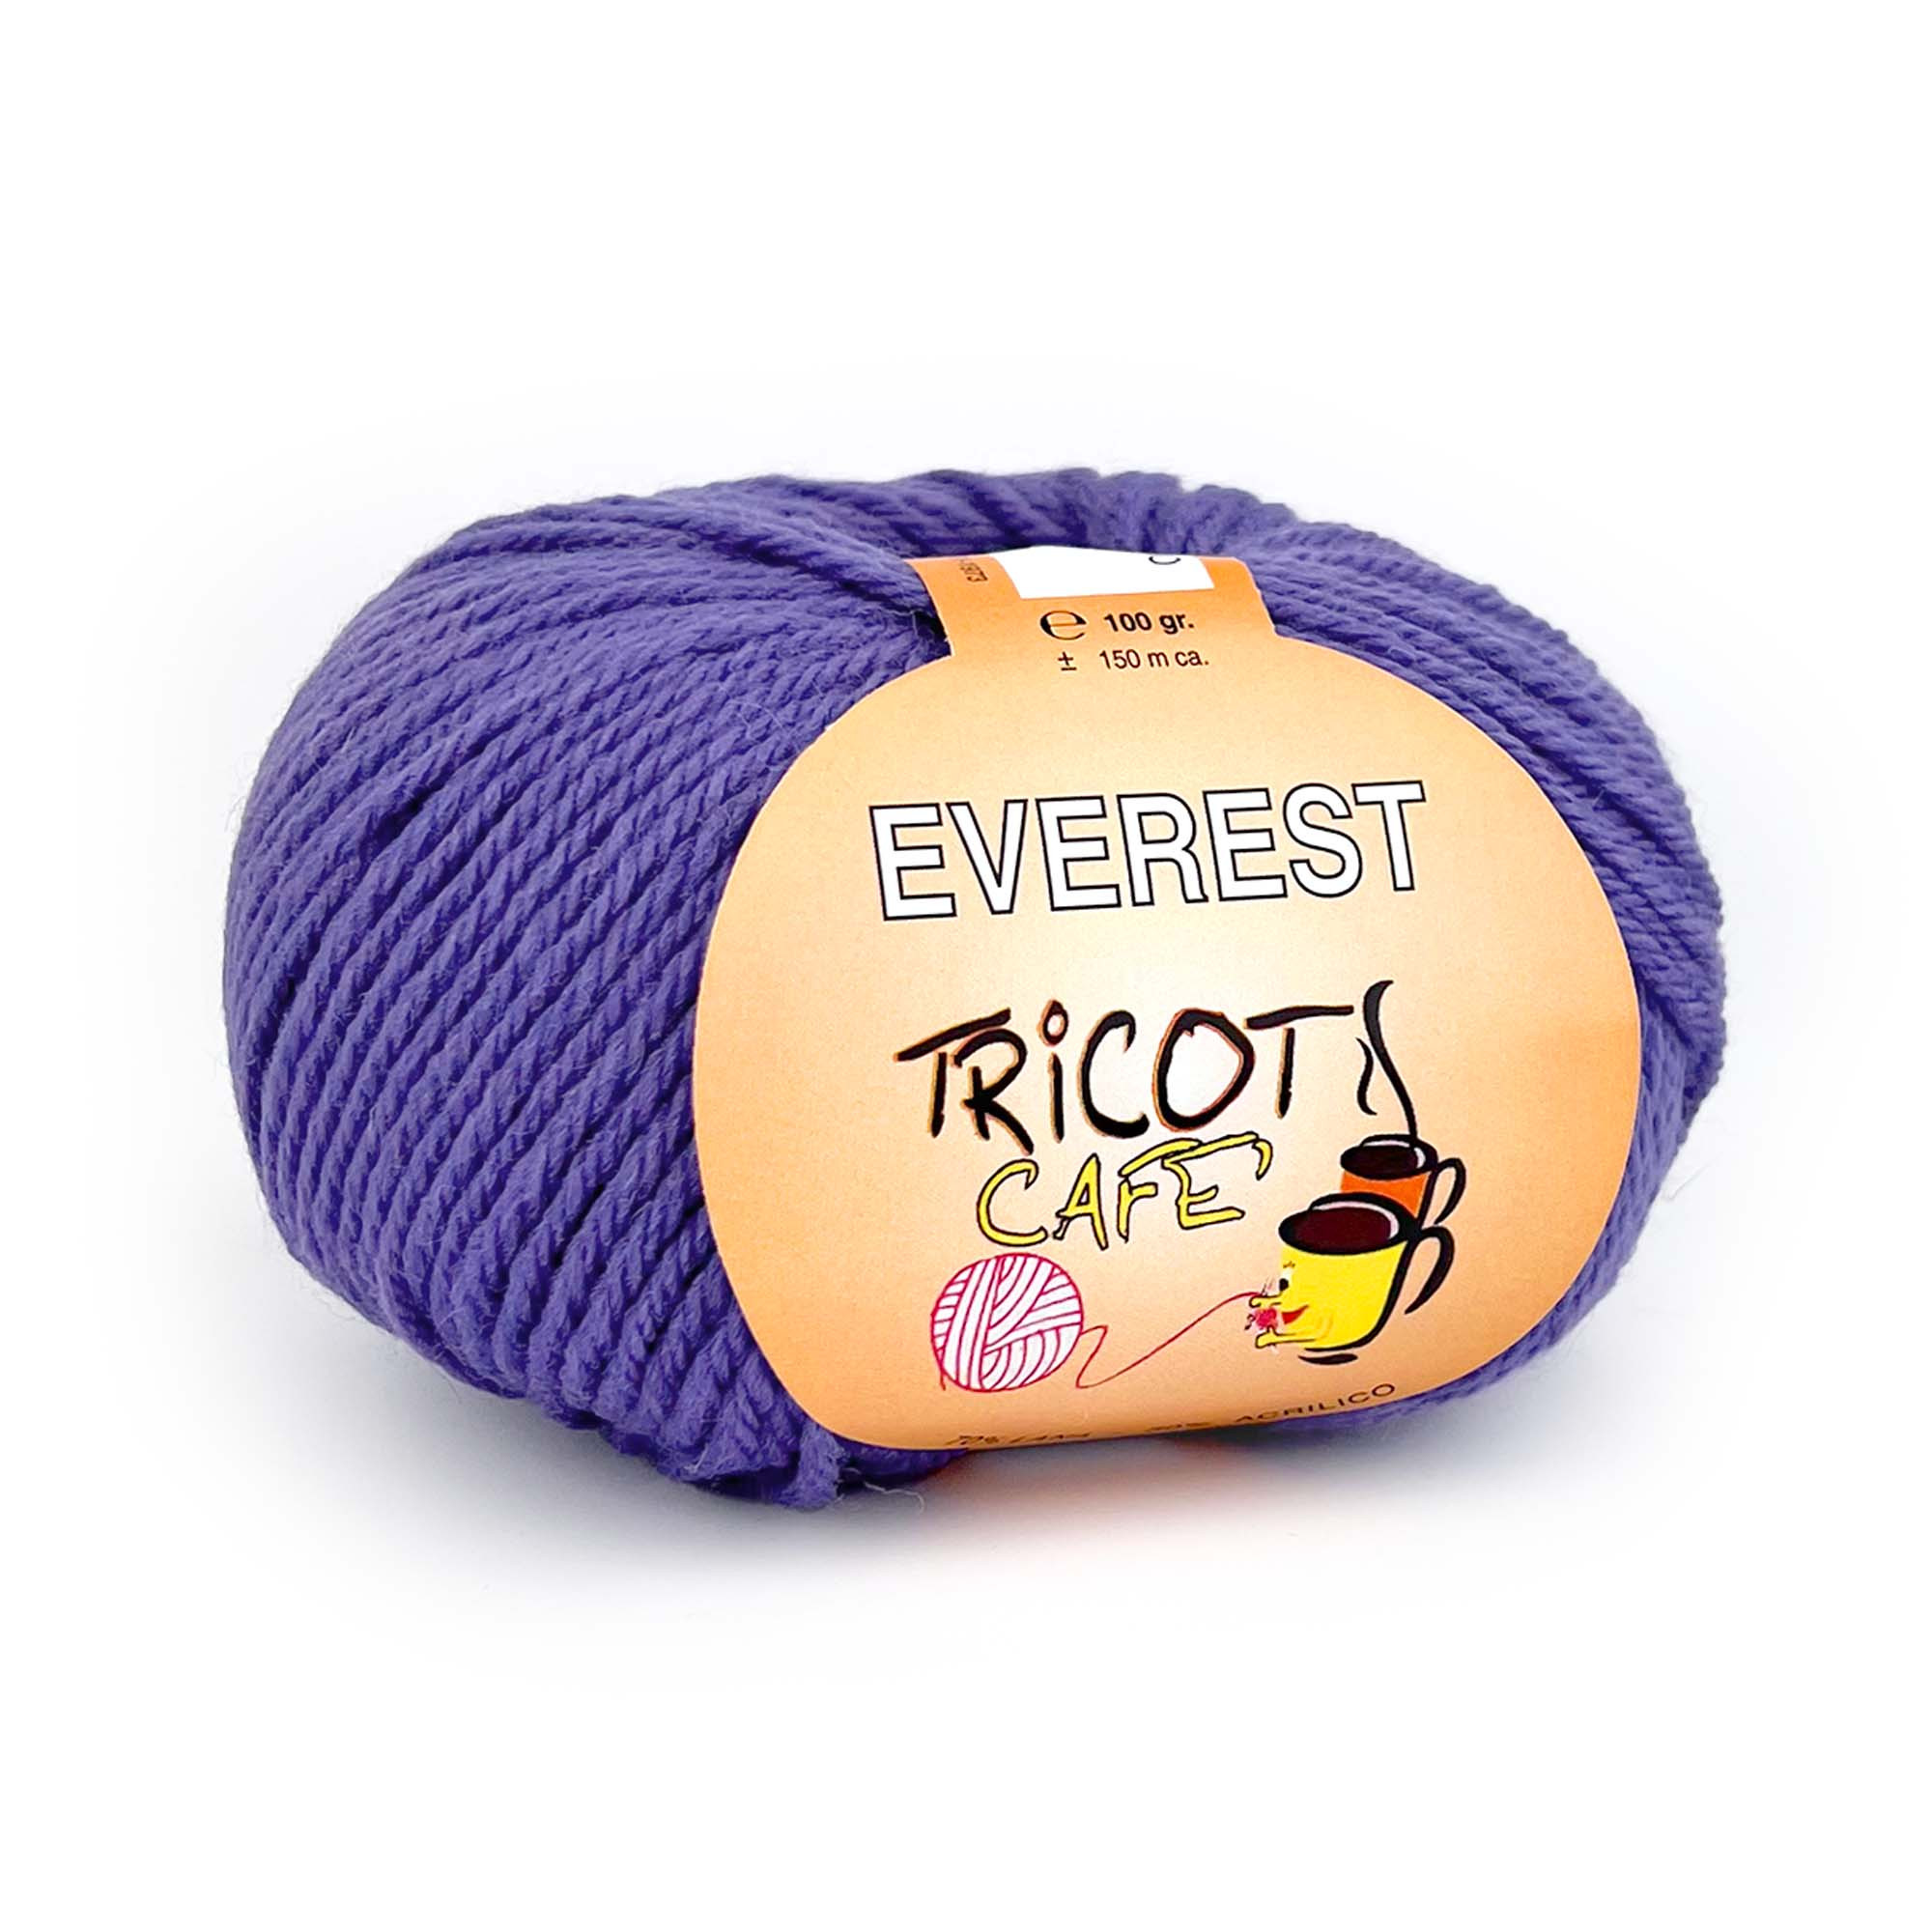 Everest by Tricot Cafè - Filato misto lana per maglieria e accessori